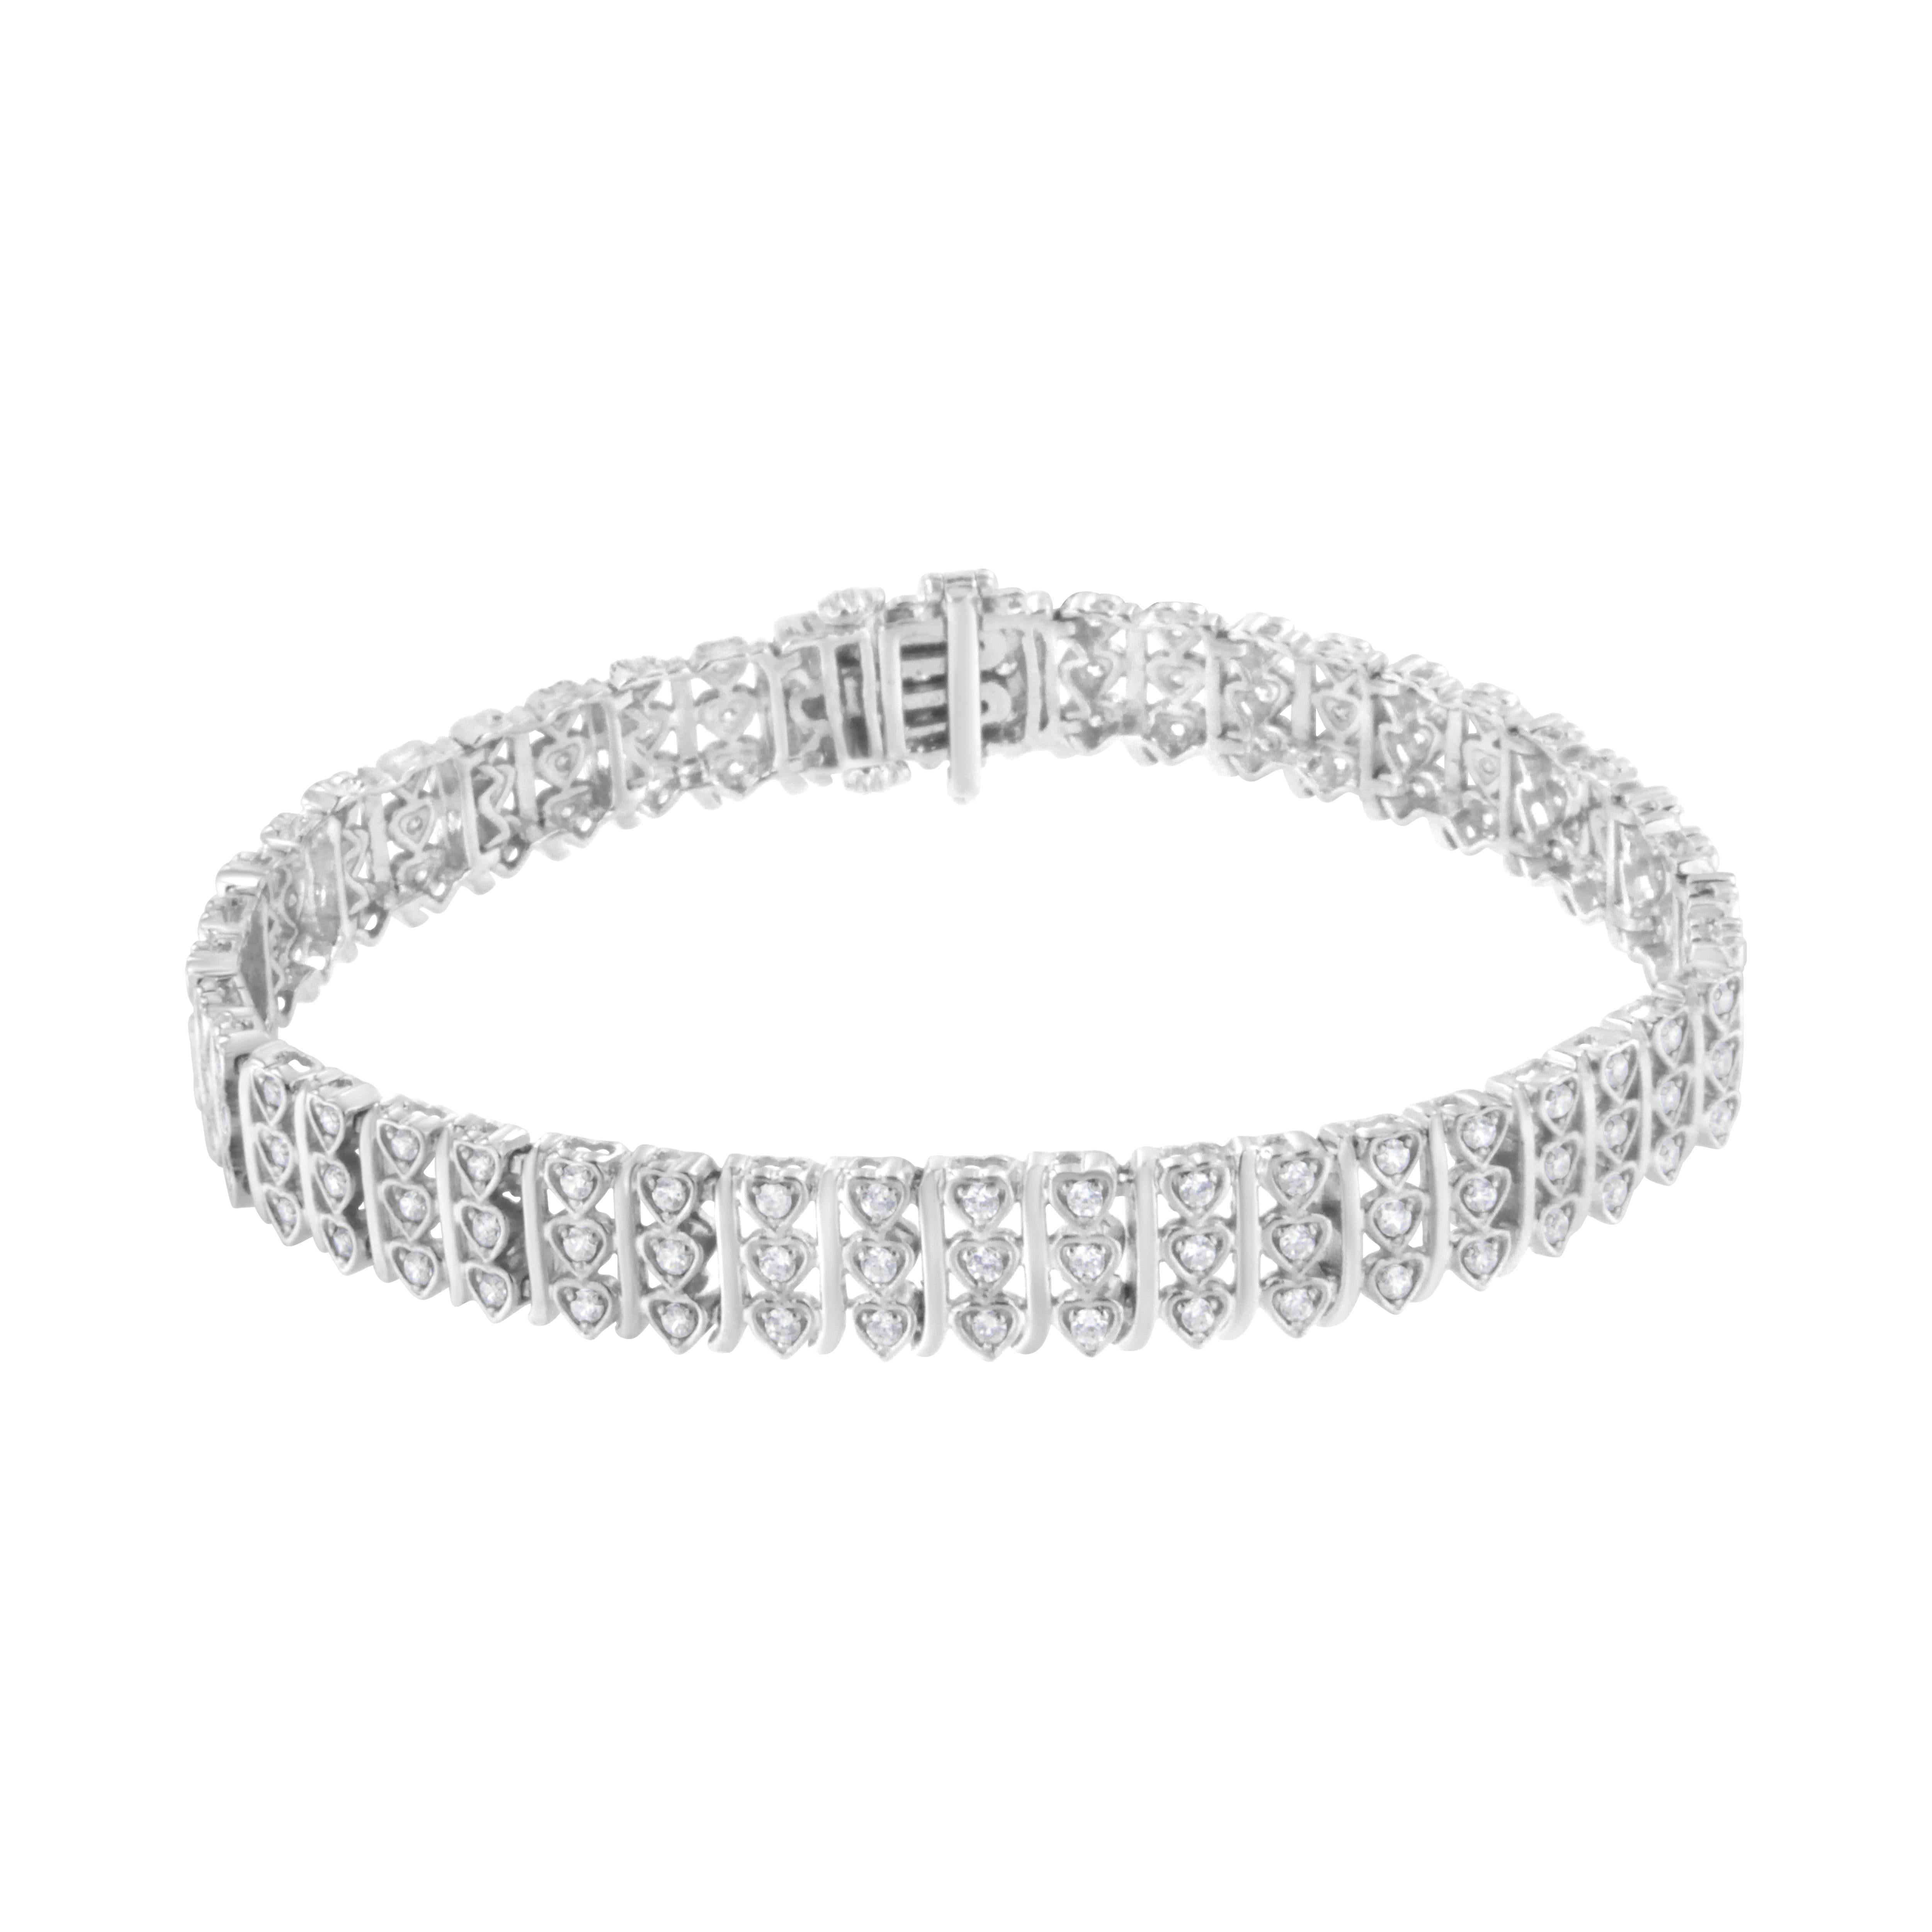 Dieses schöne Armband aus Sterlingsilber ist mit 1 1/2 Karat schönen, natürlichen Diamanten besetzt. Das Design dieses Schmuckstücks zeichnet sich durch ein sich wiederholendes Muster aus vertikalen Reihen von 3 silbernen Herzen aus, die jeweils mit